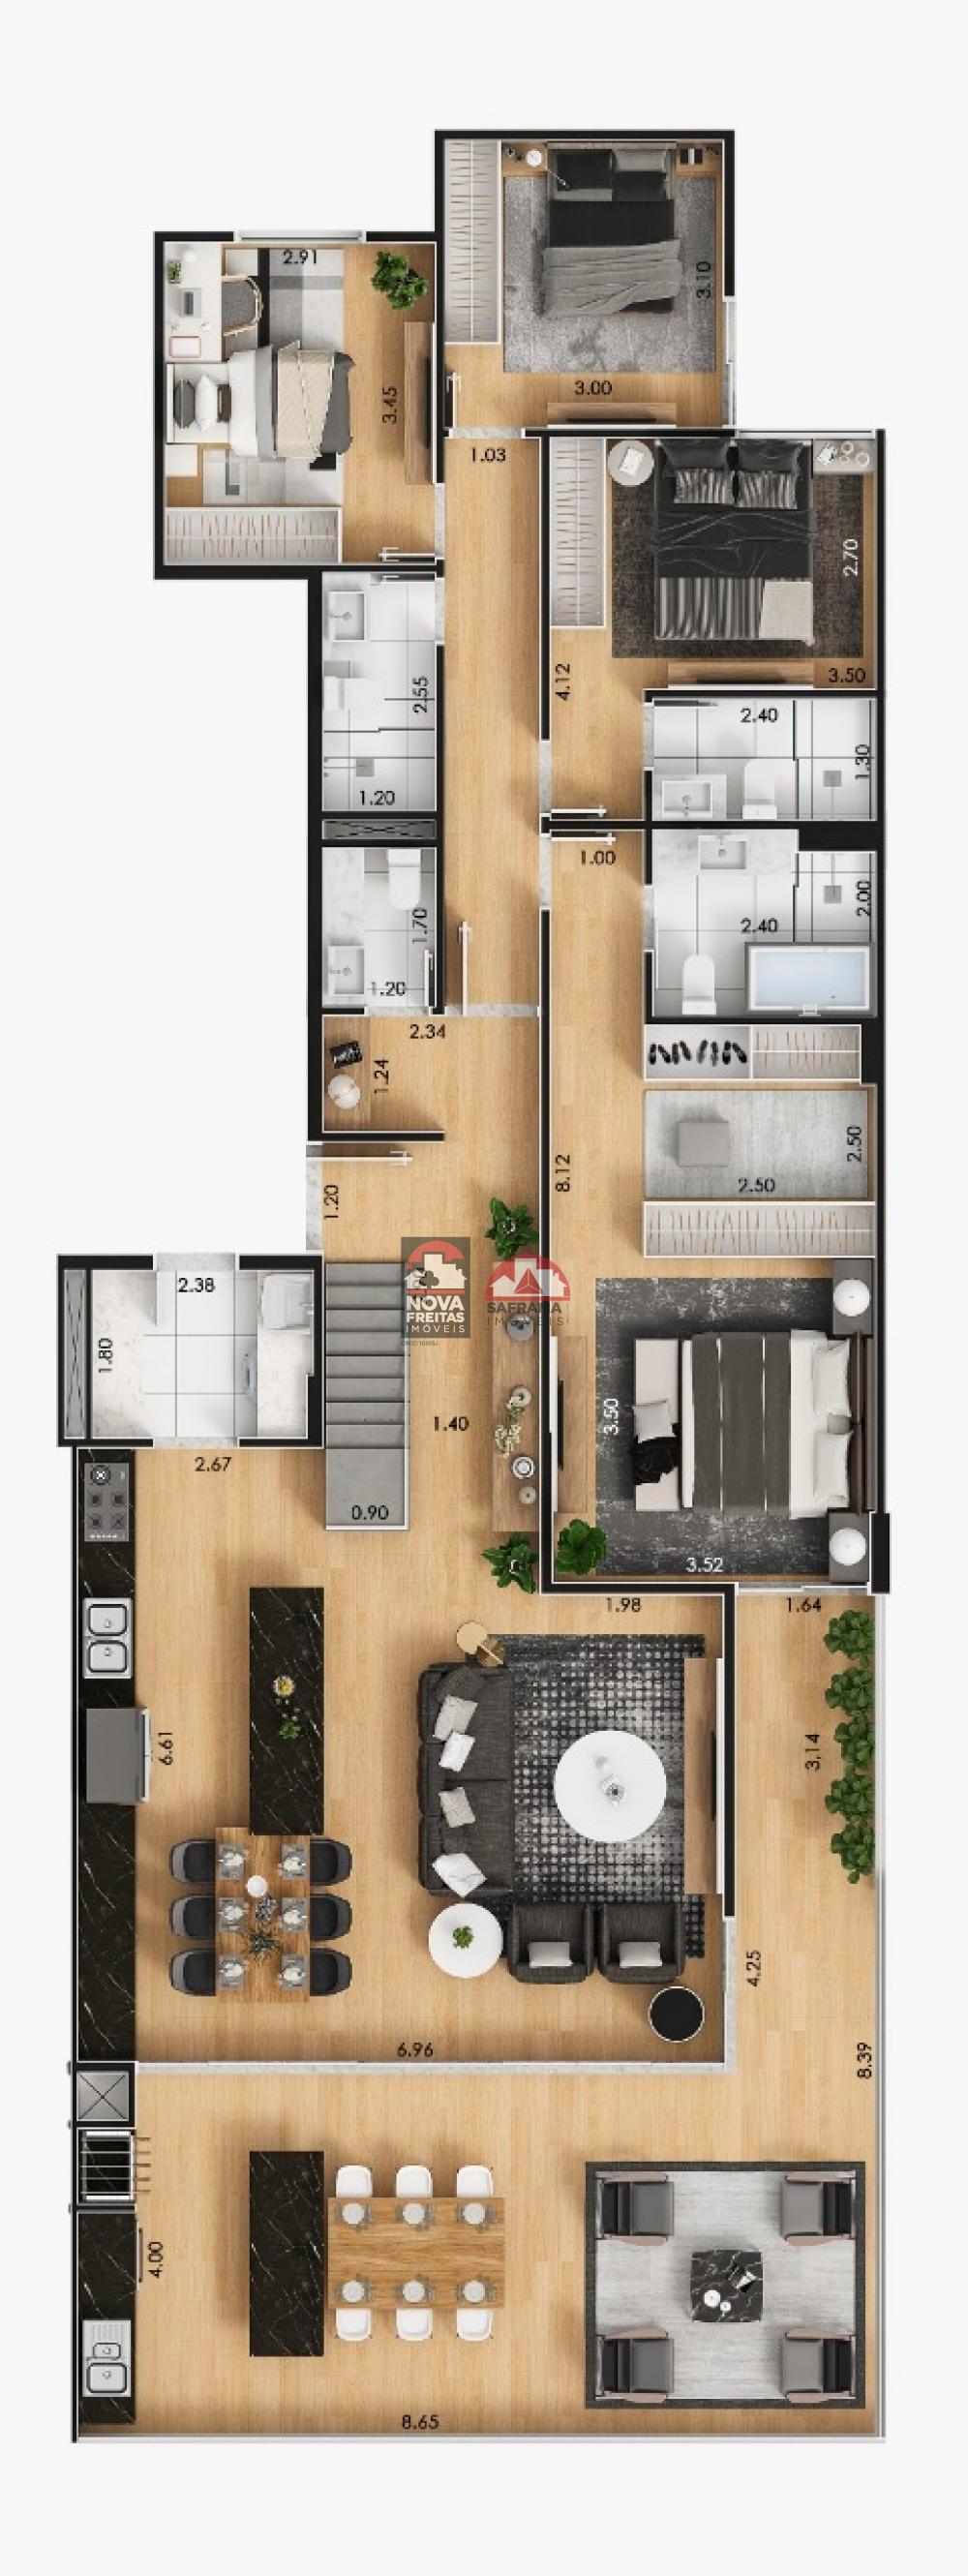 Galeria - Edifcio Acrpole - Edifcio de Apartamento